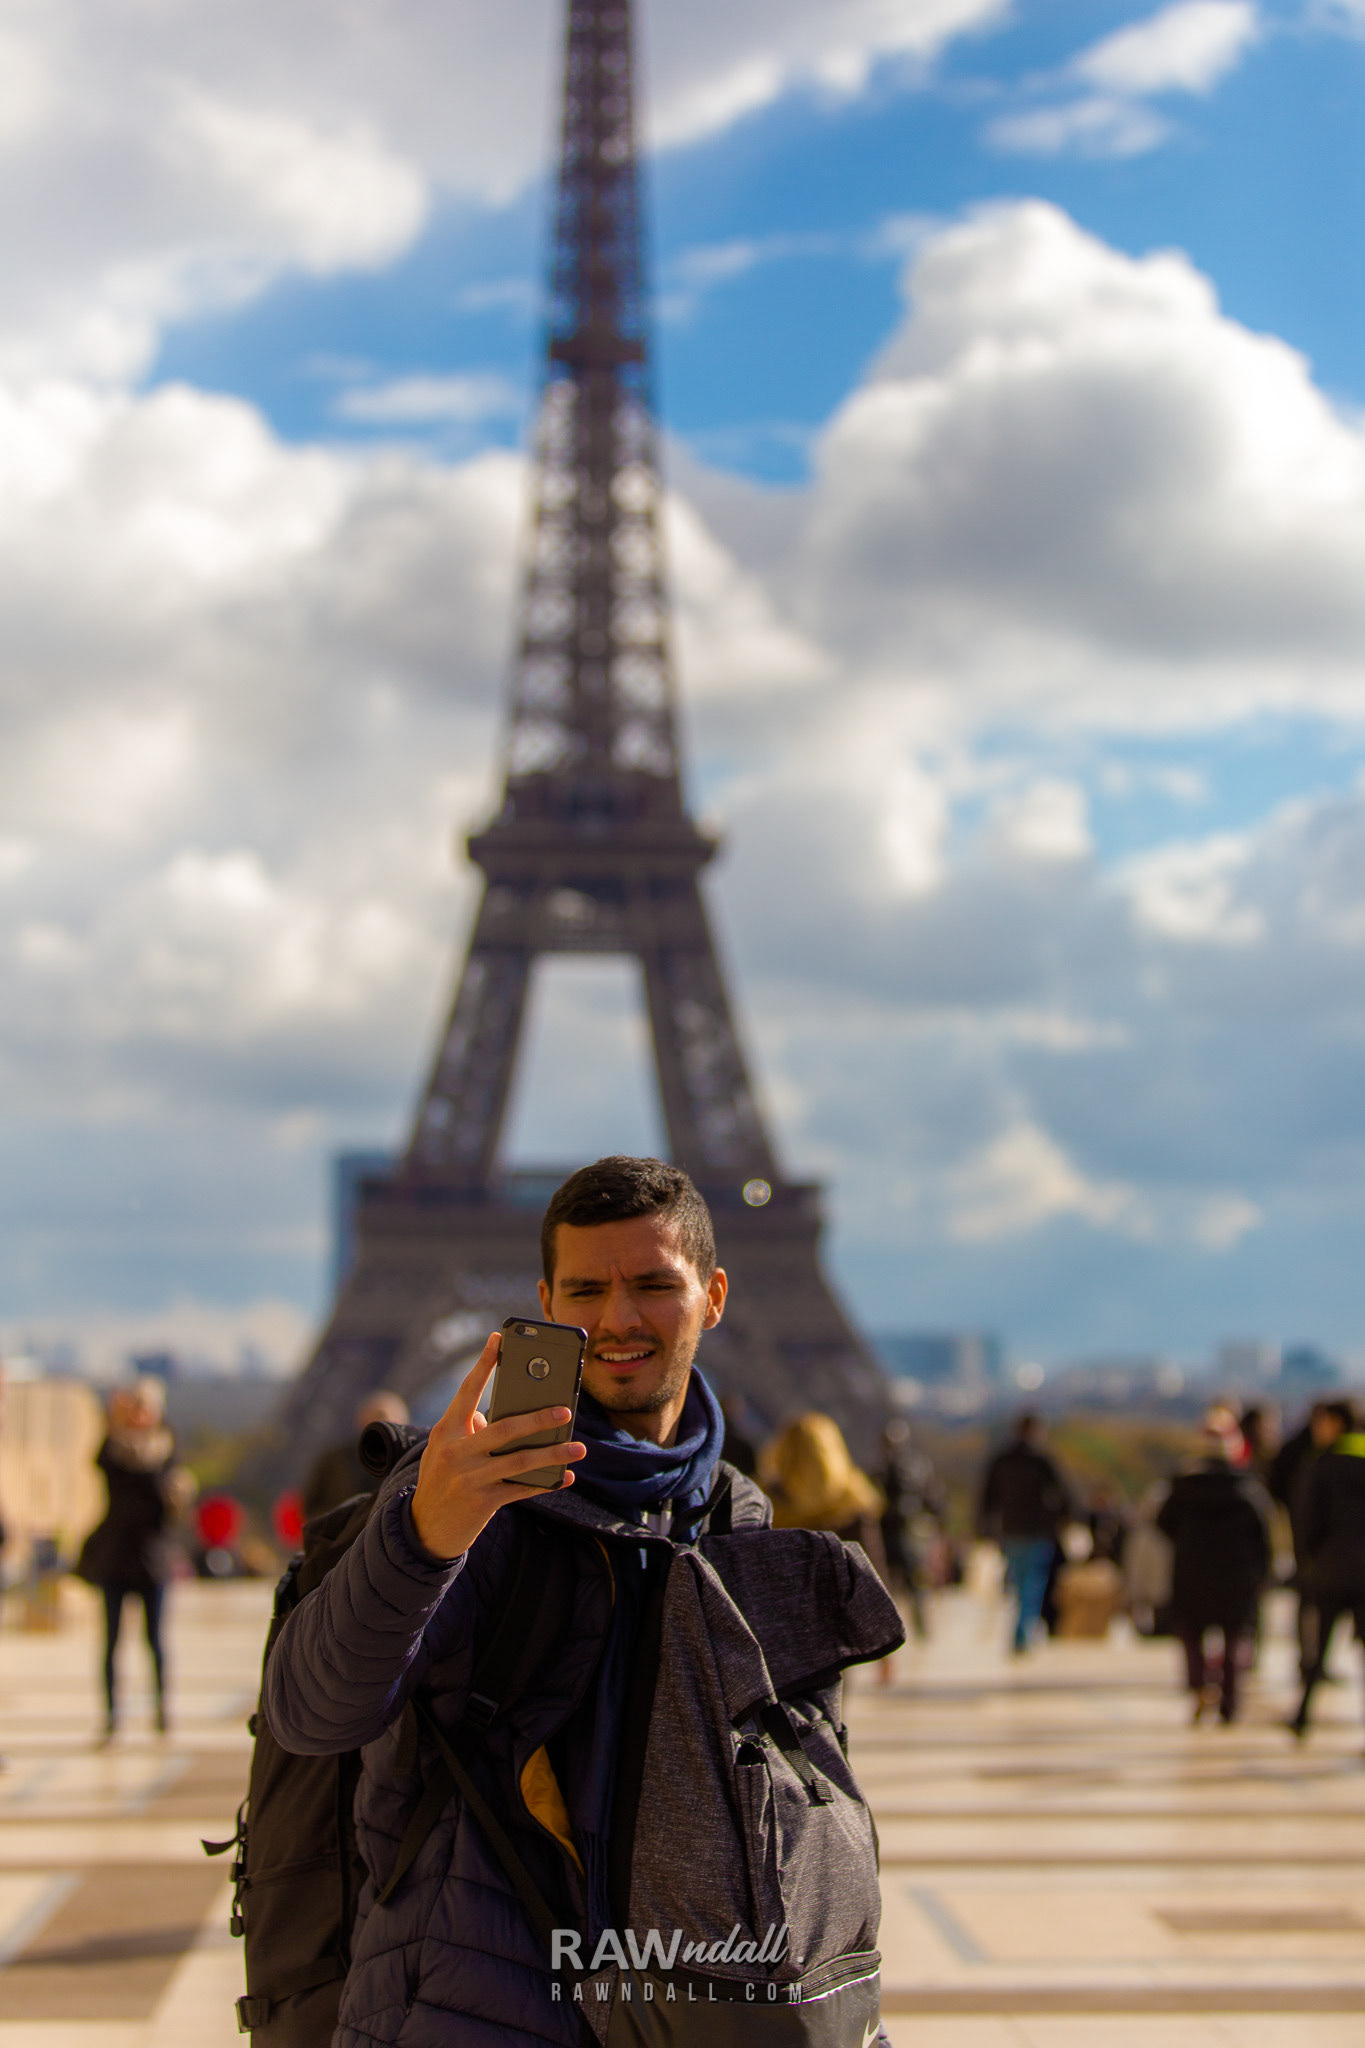 Turista haciéndose un autoretrato con celular en Paris.